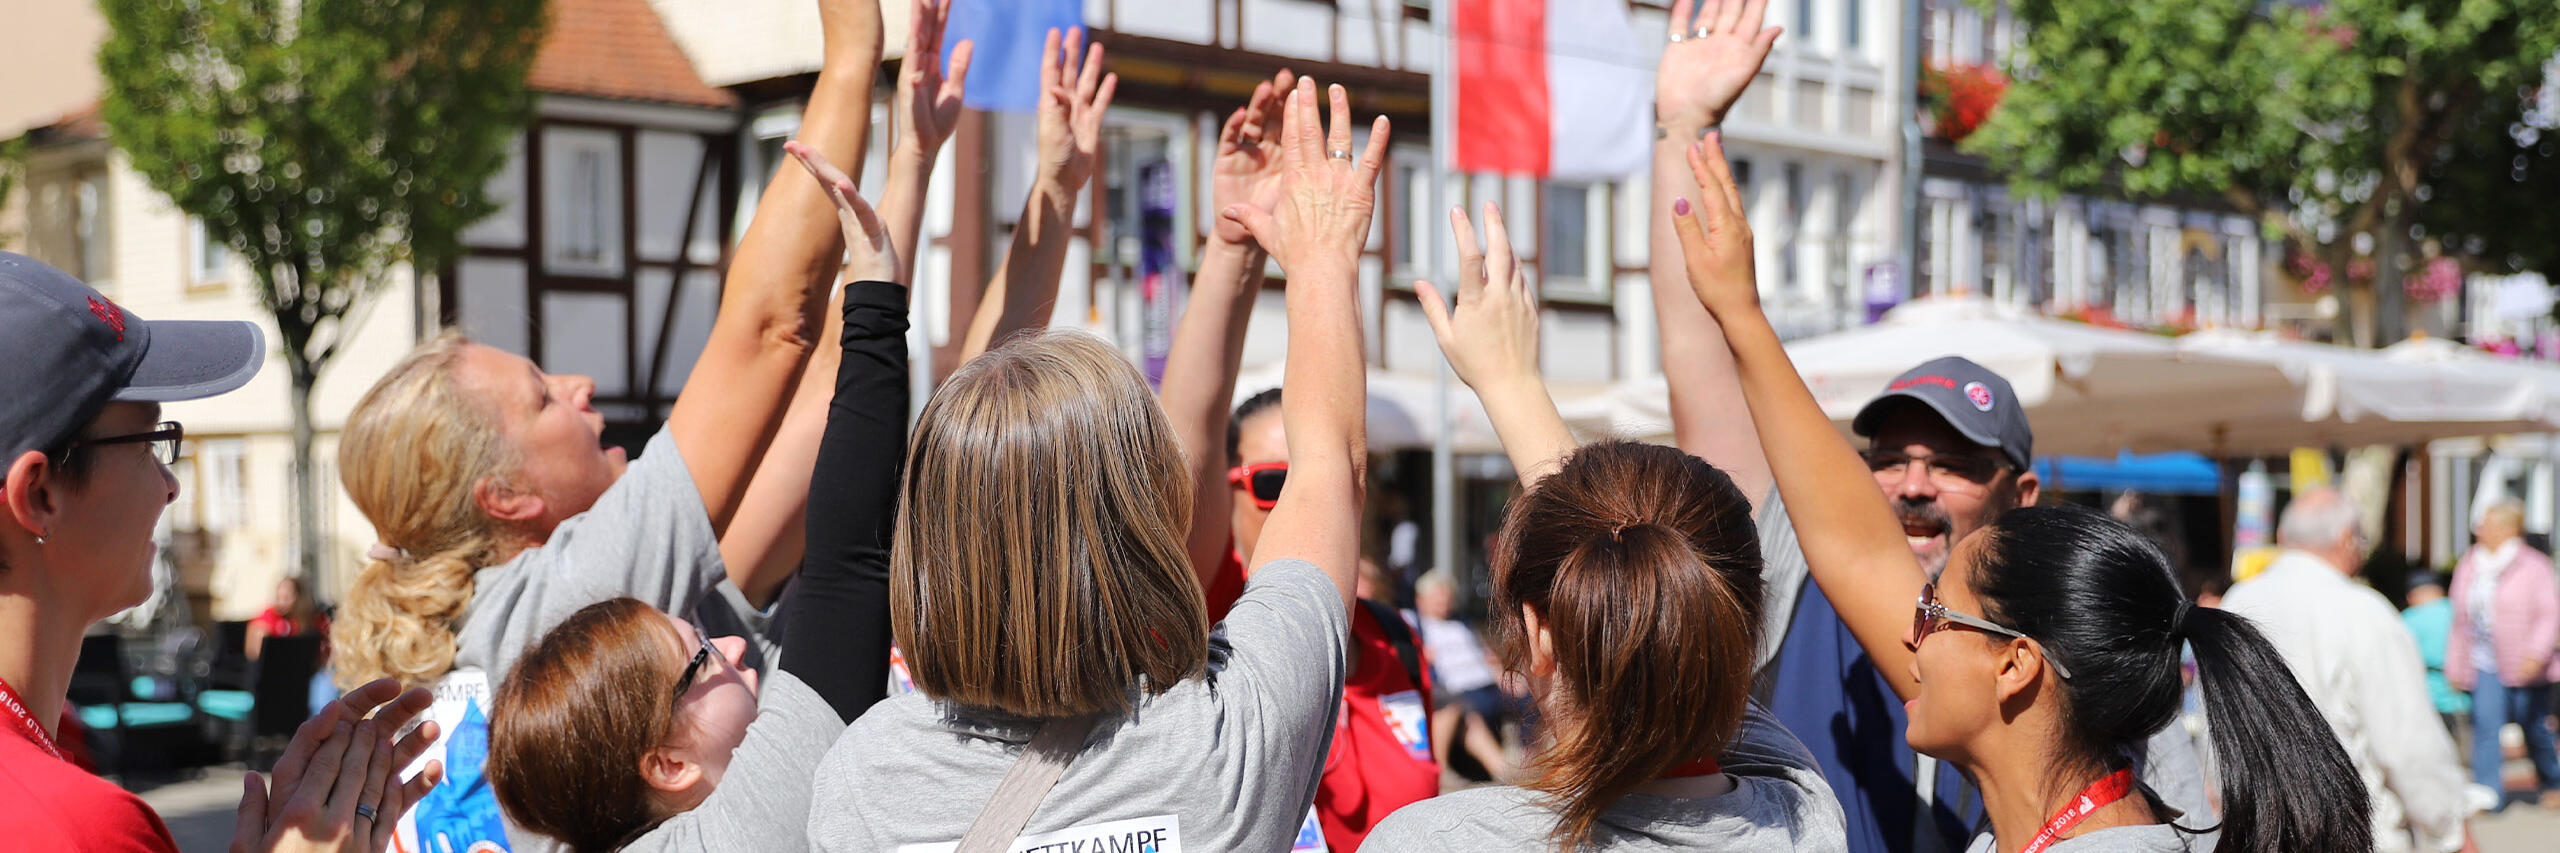 Mehrere Erzieher der Johanniter geben sich ein high-five, um sich für die bevorstehenden Aufgaben beim Landeswettkampf 2018 in Bad Hersfeld anzufeuern.